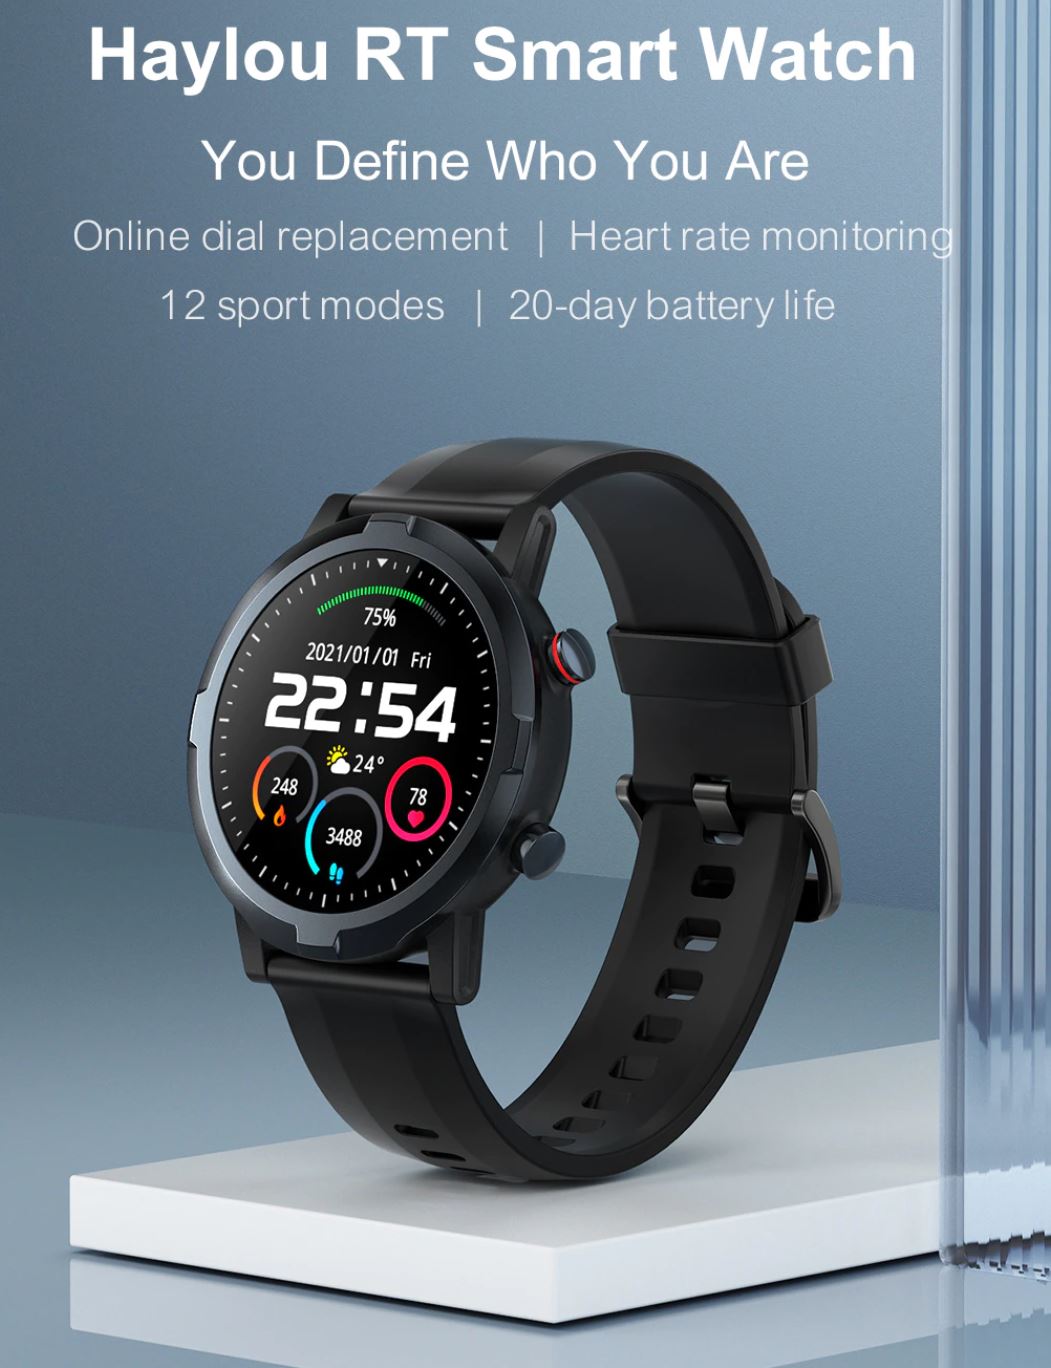 Smartwatche z Aliexpress - bogata oferta w rewelacyjnie niskich cenach - Haylou RT Smart Watch